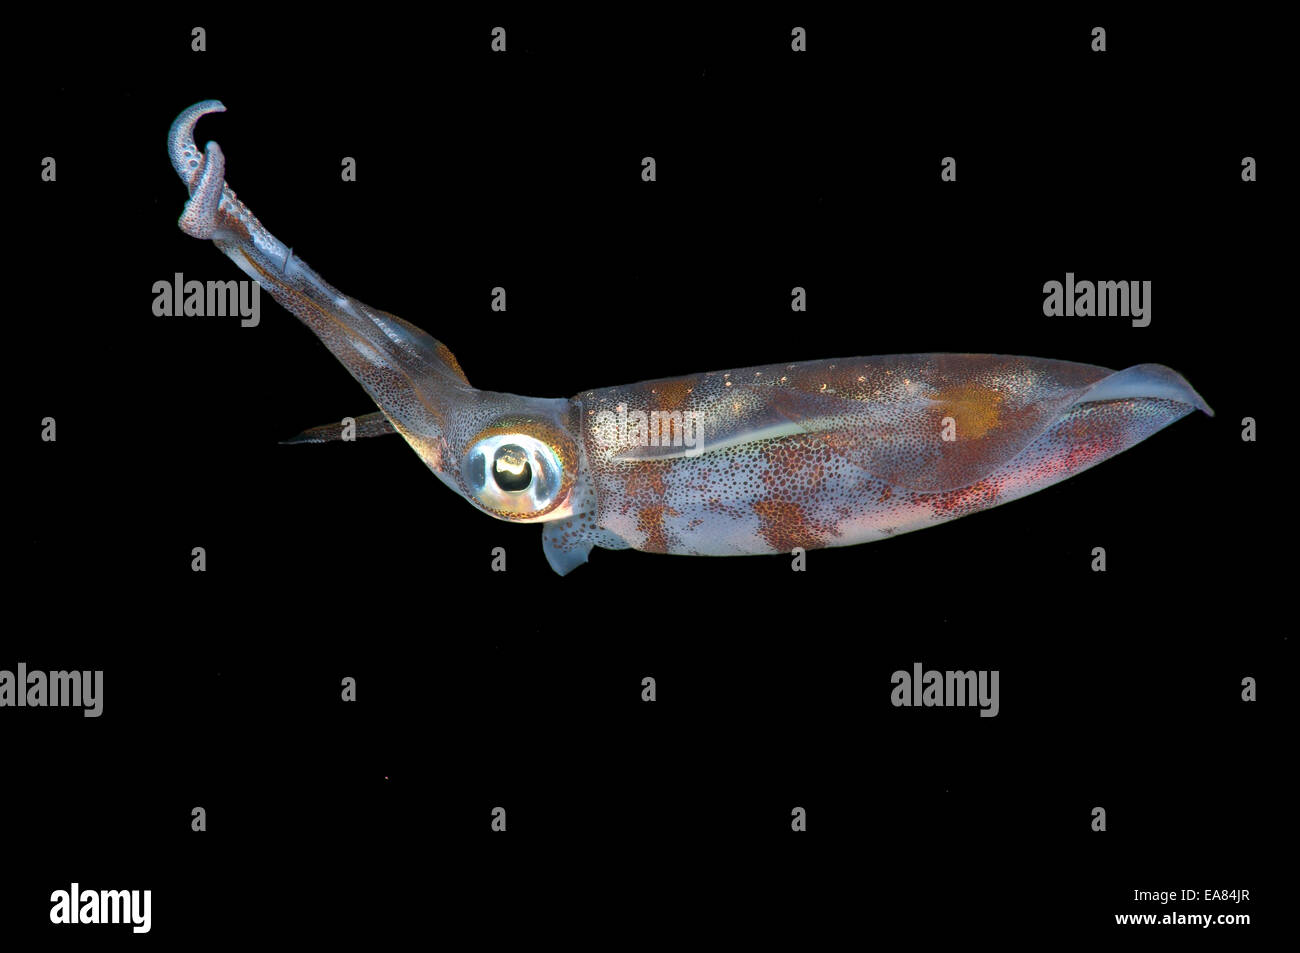 Bigfin reef squid (Sepioteuthis lessoniana) Stock Photo